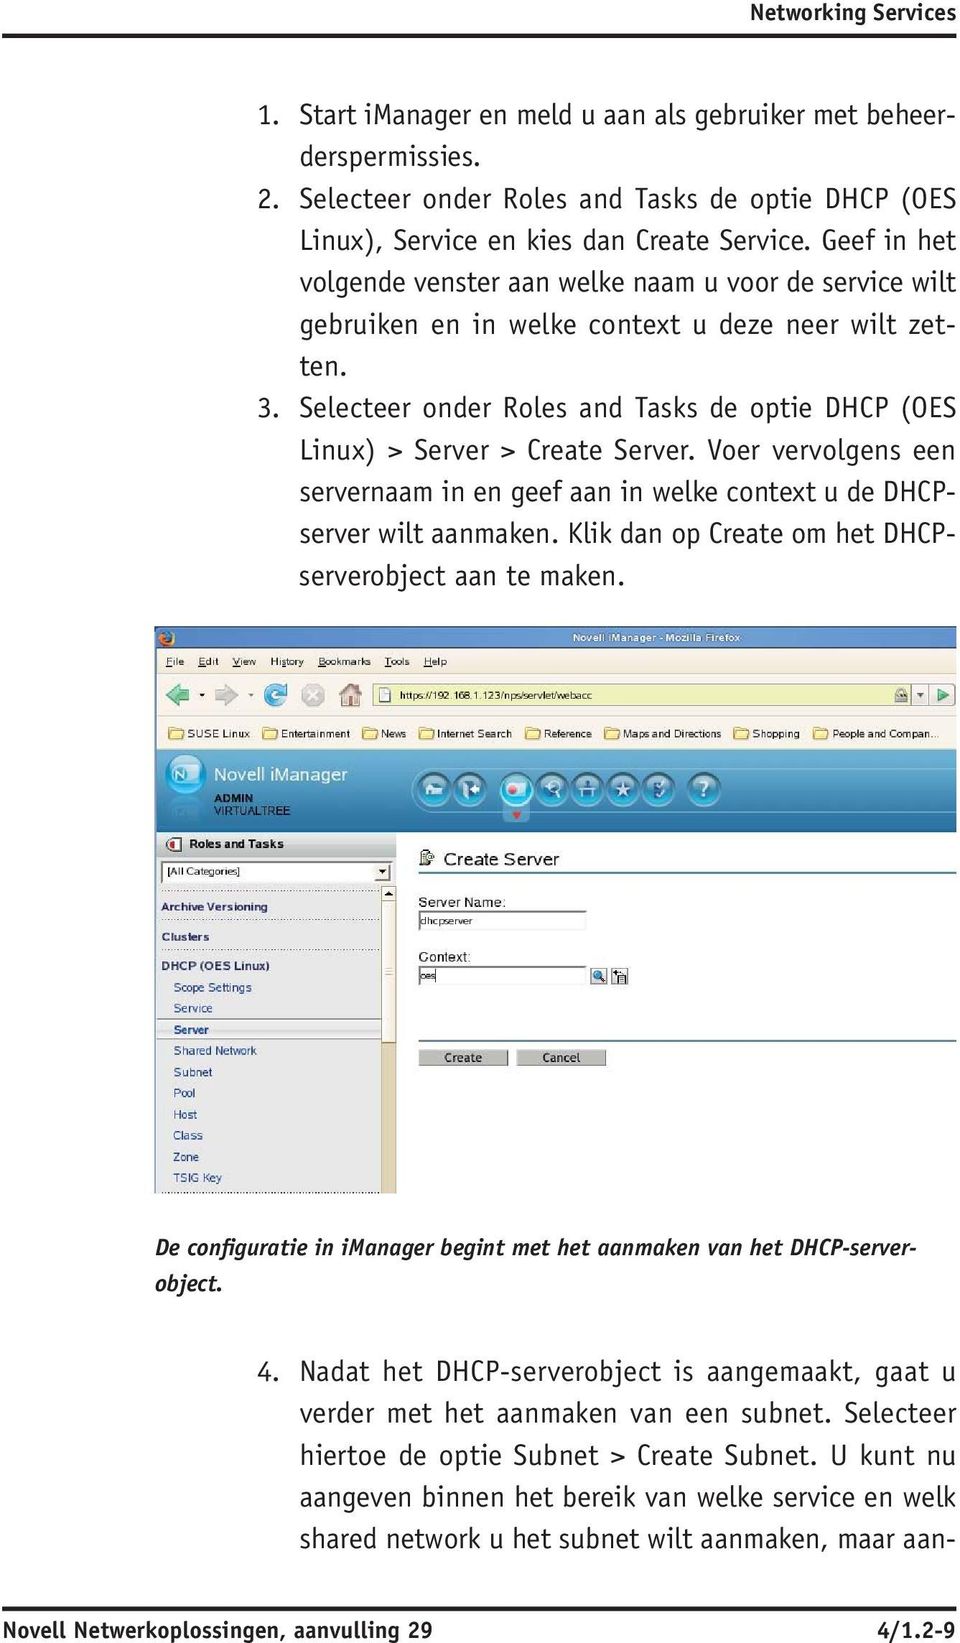 Selecteer onder Roles and Tasks de optie DHCP ( OES Linux) > Server > Create Server. Voer vervolgens een servernaam in en geef aan in welke context u de DHCP - server wilt aanmaken.